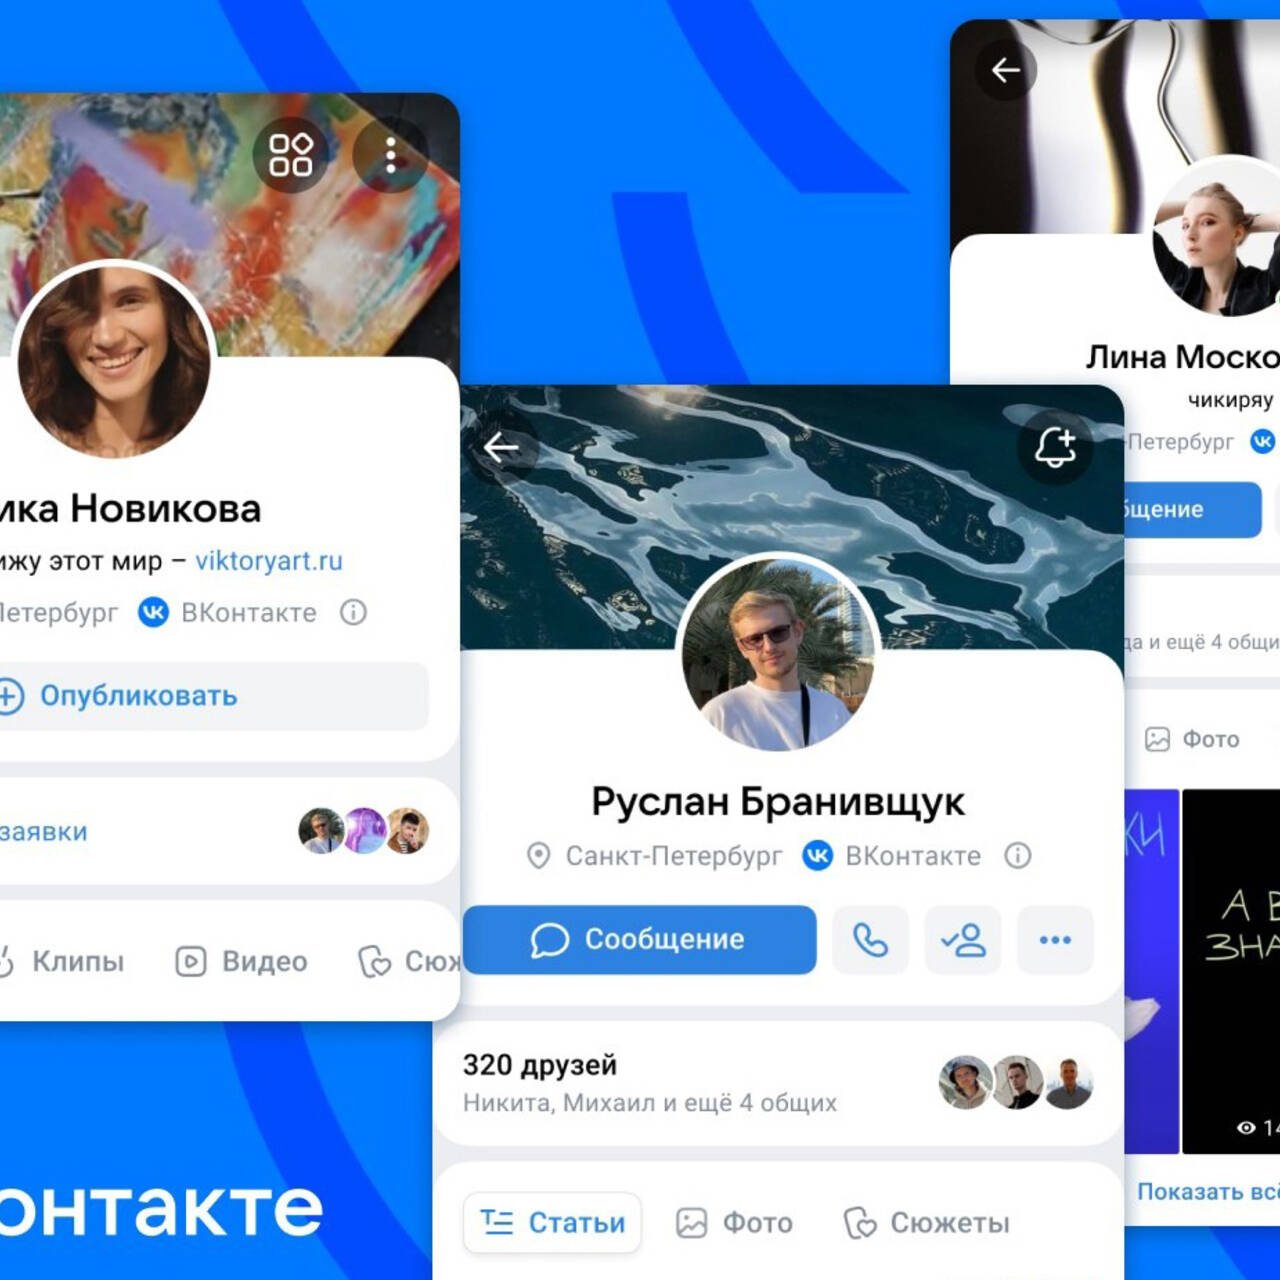 Как формируется список друзей Вконтакте